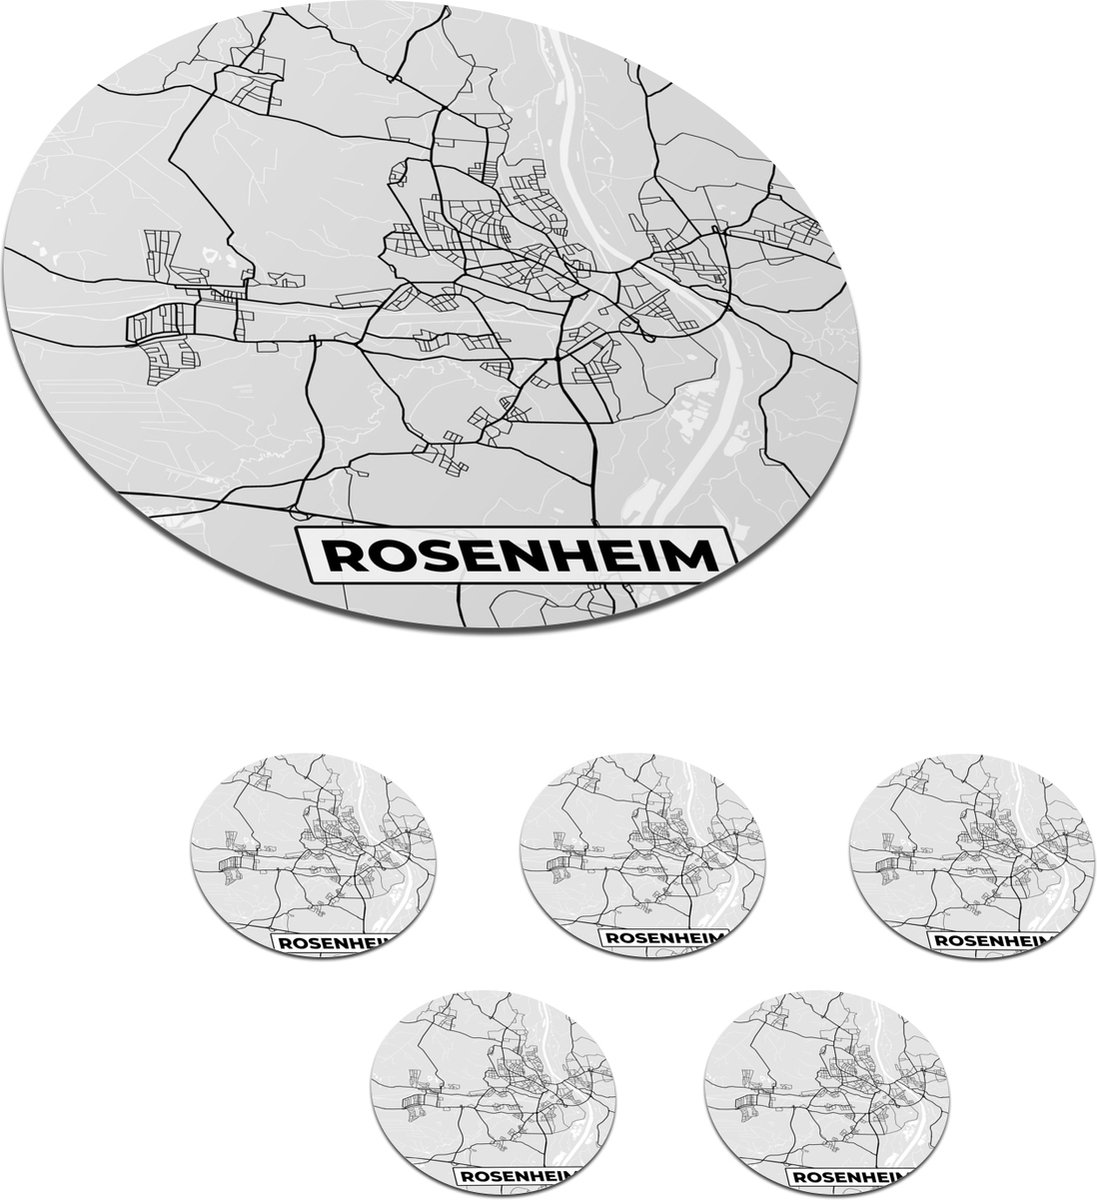 Onderzetters voor glazen - Rond - Duitsland - Stadskaart - Plattegrond - Kaart - Rosenheim - 10x10 cm - Glasonderzetters - 6 stuks